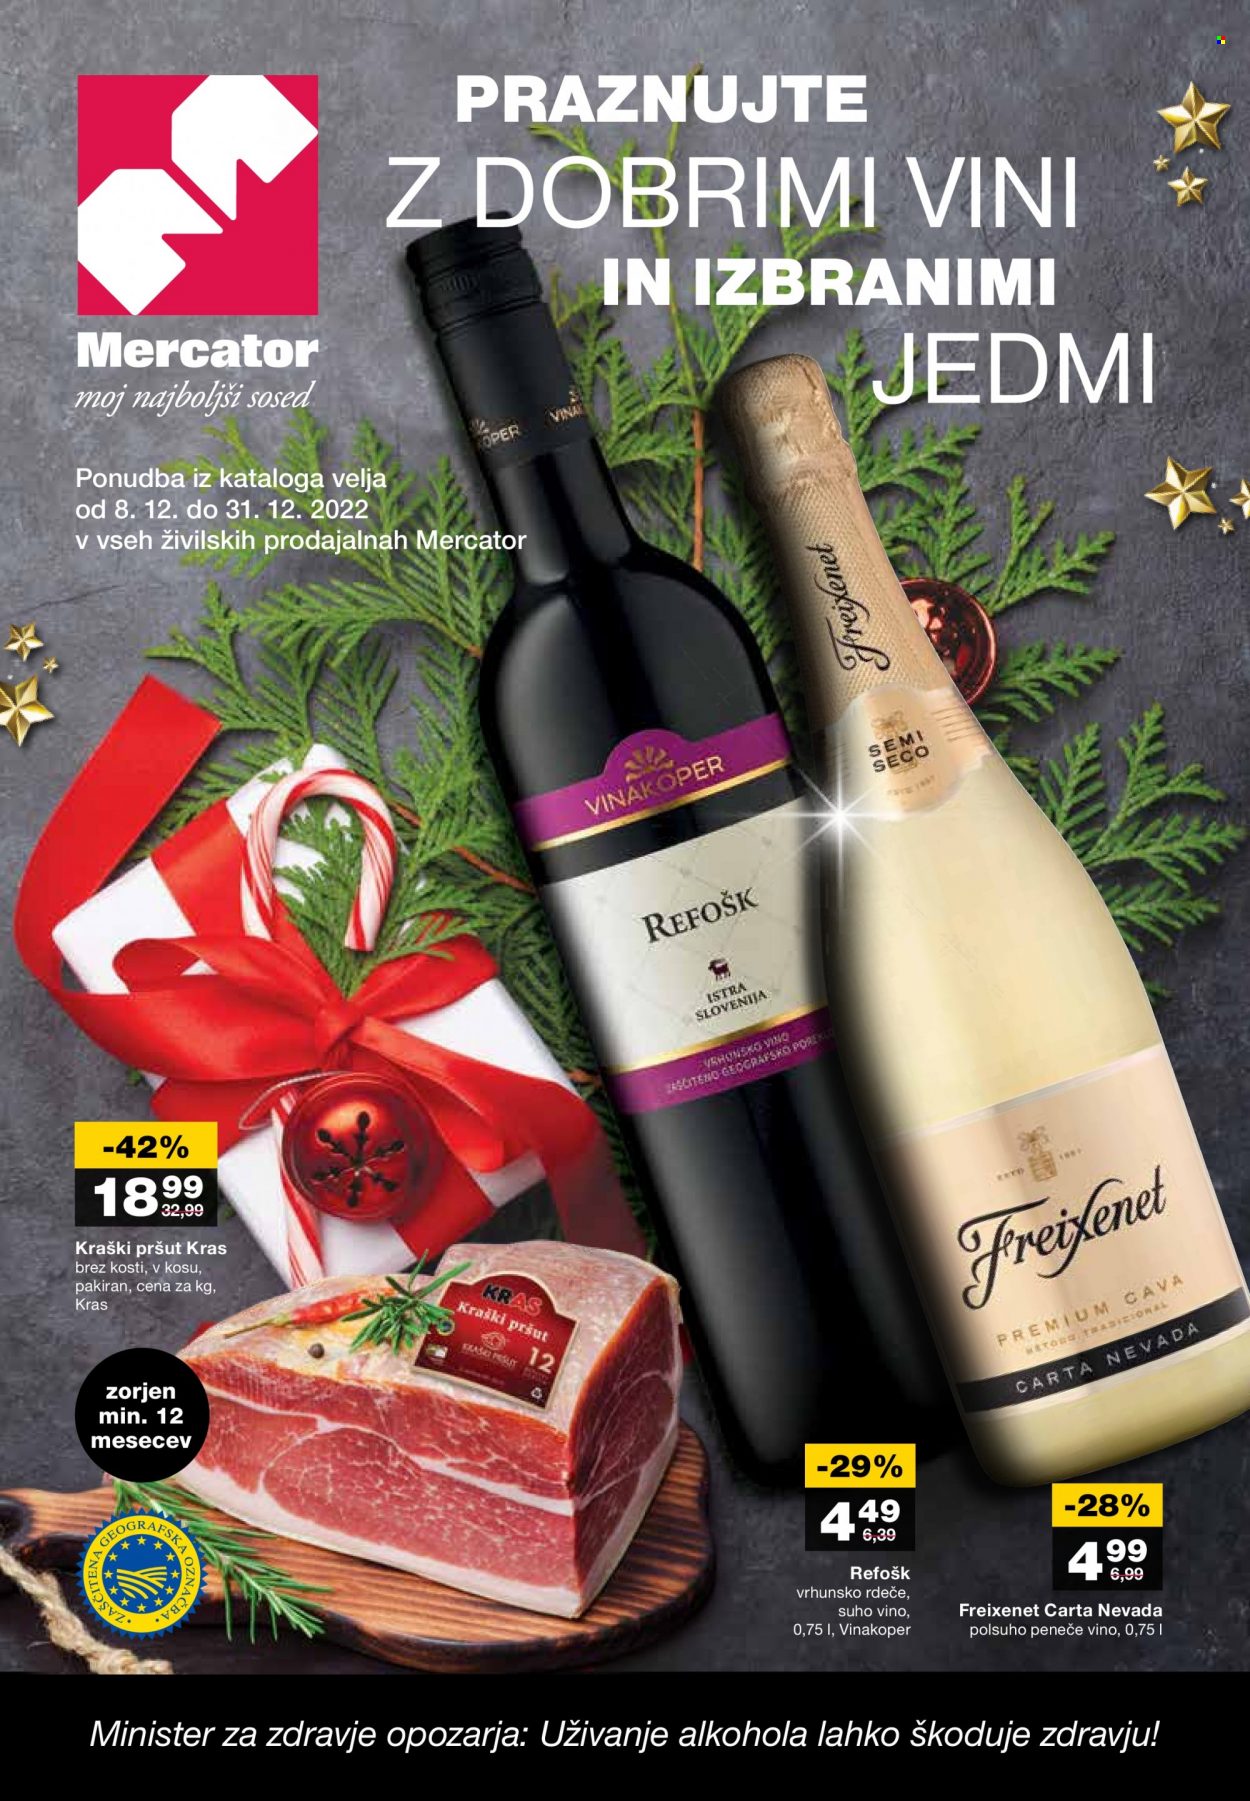 thumbnail - Mercator katalog - 8.12.2022 - 31.12.2022 - Ponudba izdelkov - vino, kraški pršut, pršut. Stran 1.